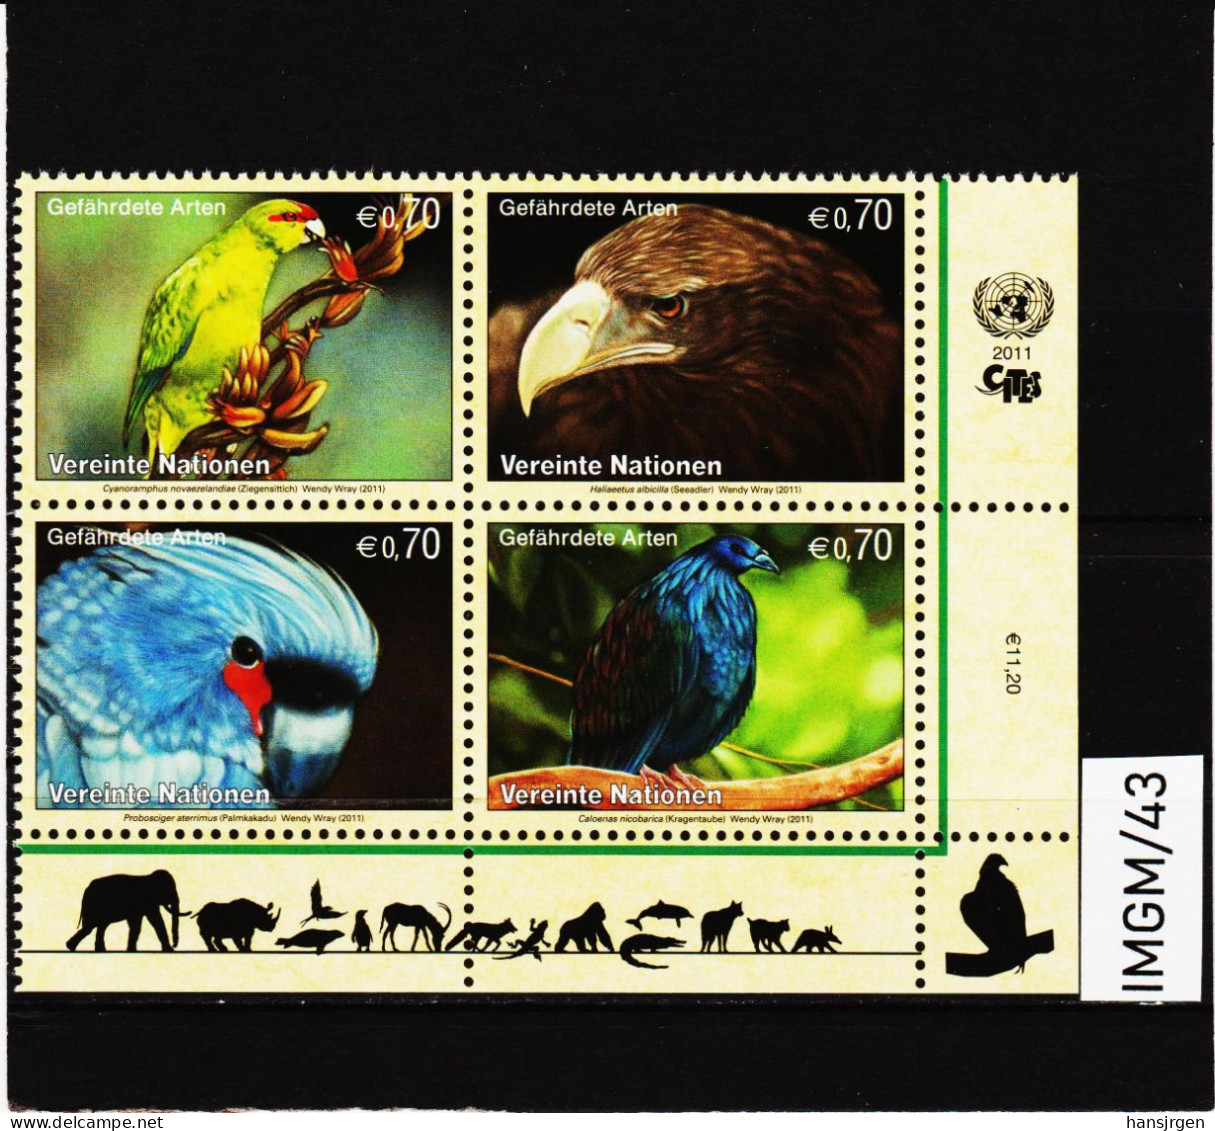 IMGM/43 VEREINTE NATIONEN UNO WIEN 2011  MICHL  732/35 VIERERBLOCK ** Postfrisch Siehe ABBILBUNG - Unused Stamps